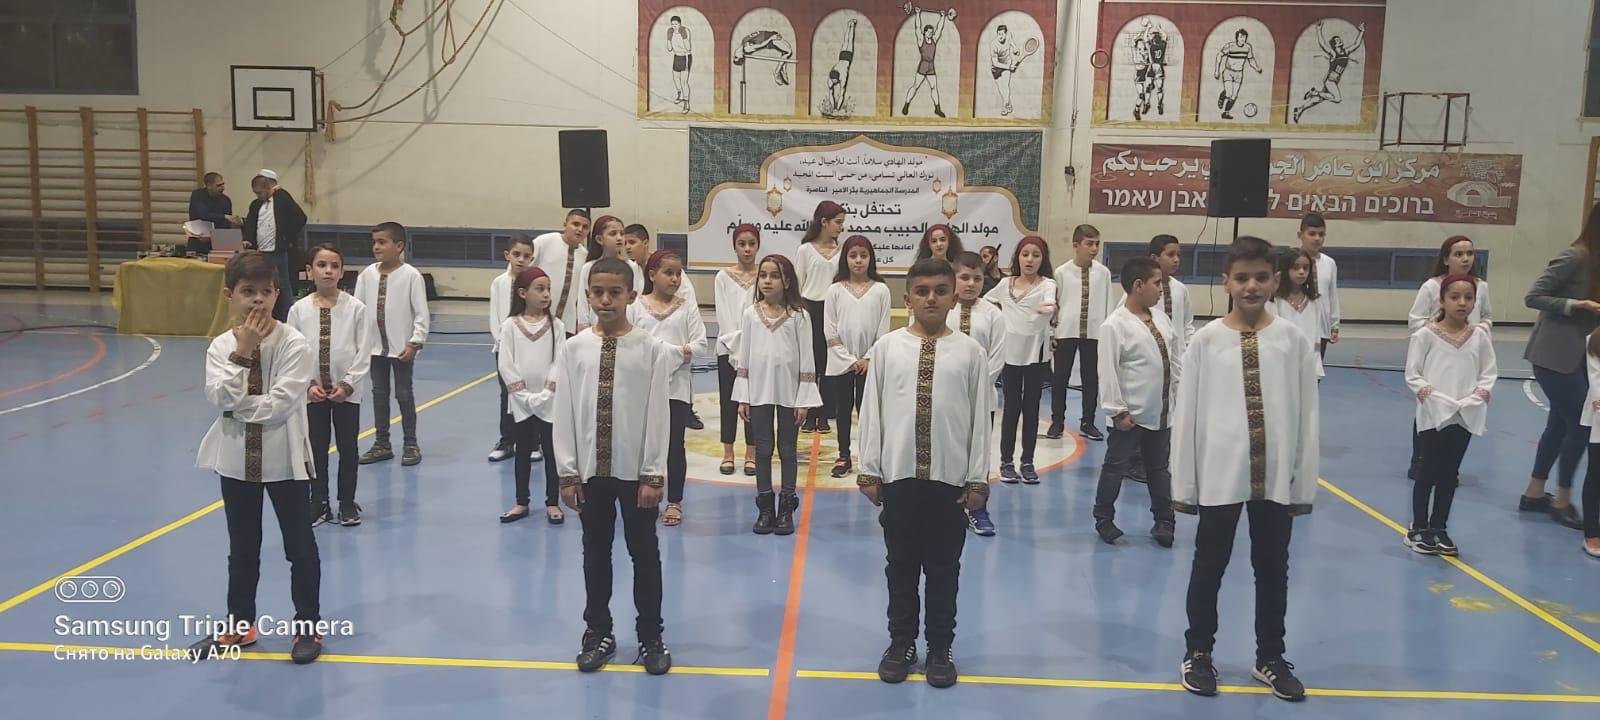 أمسية تكريم مَهيبة بأجواءٍ روحانيةّ قامت المدرسة الجماهيريّة بئر الأمير-الناصرة بتنظيمها احتفاءً بتكريم الأمّ الفاضلة جهاد بطّو"ام سهيل" واحتفالًا بالمولد النّبويّ الشّريف-18